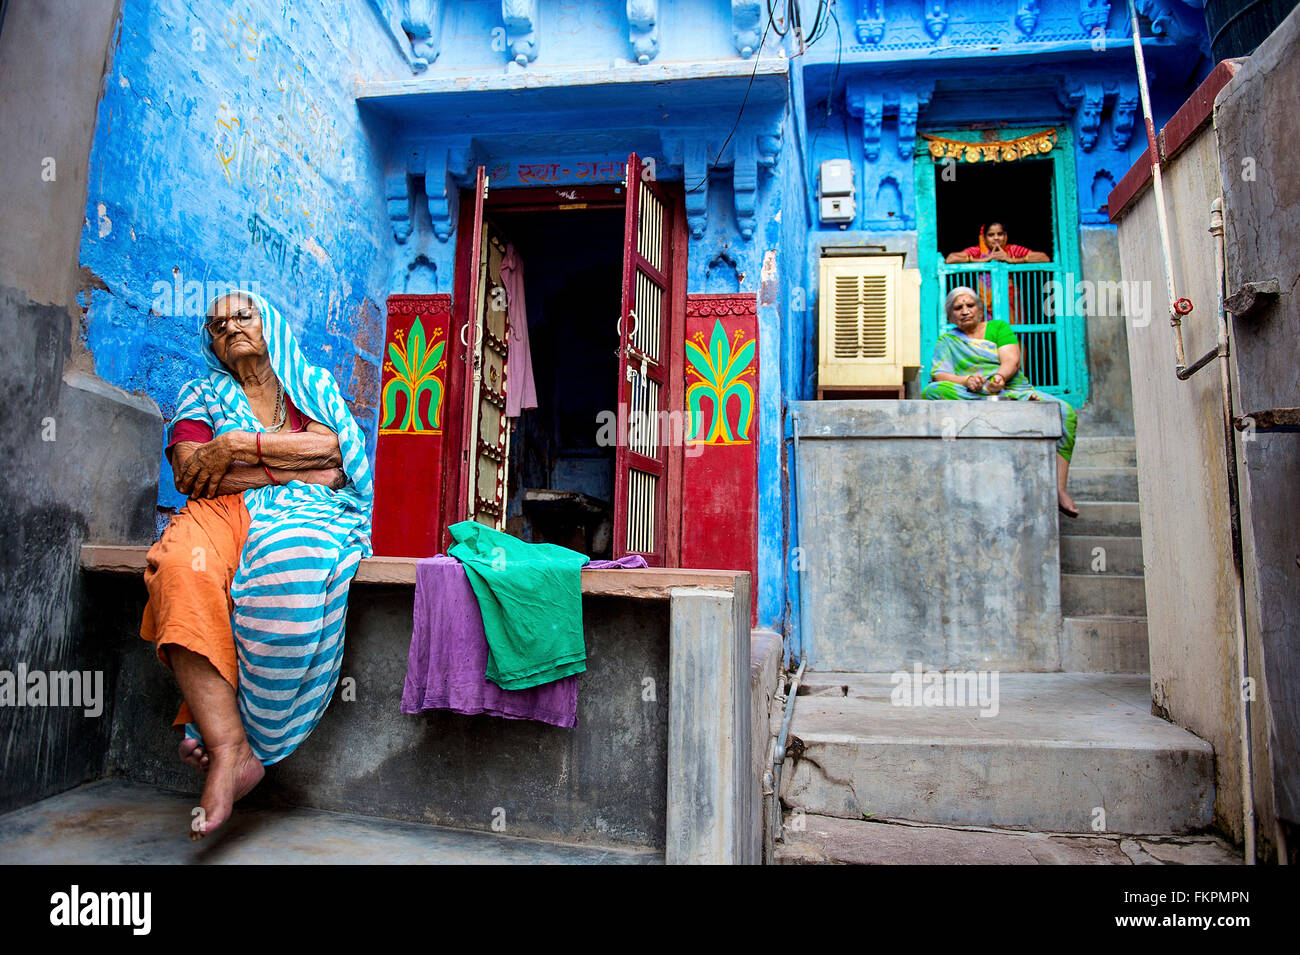 La vie quotidienne de la famille indienne locale non identifiés dans les rues de Jodhpur, Inde. Banque D'Images